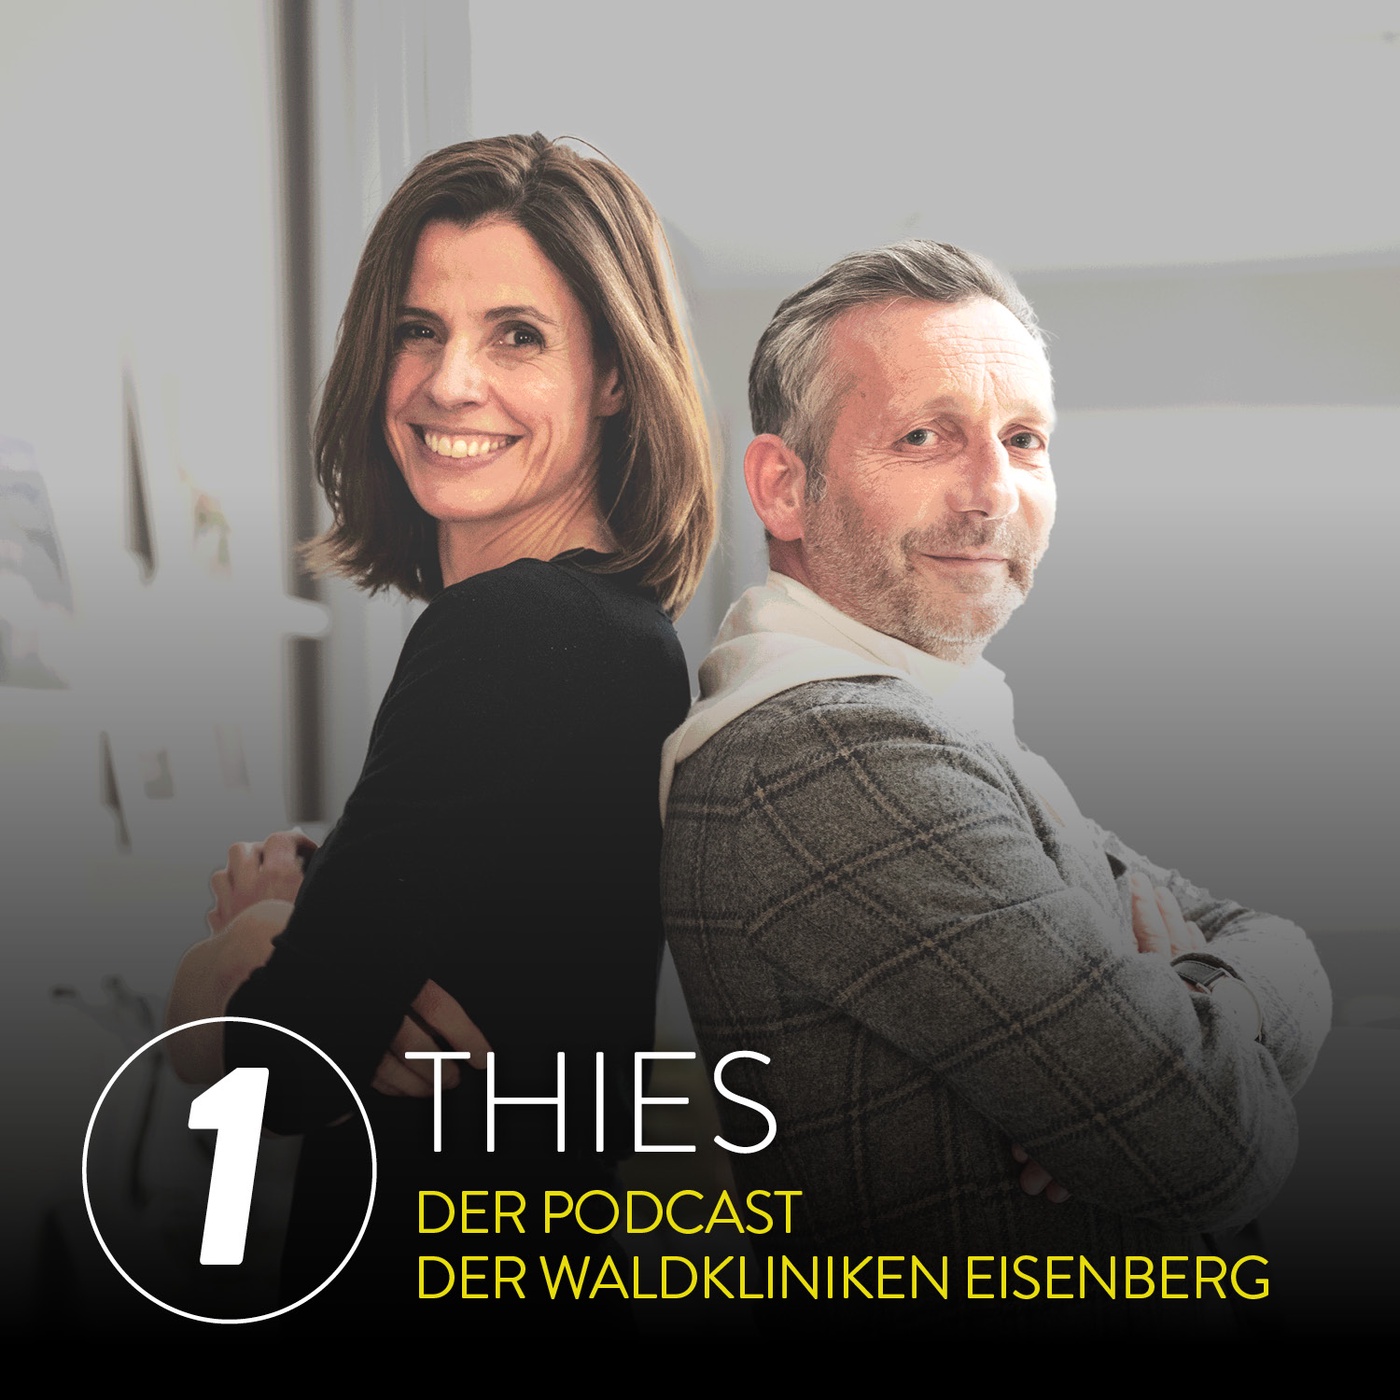 Thies – der Podcast der Waldkliniken Eisenberg